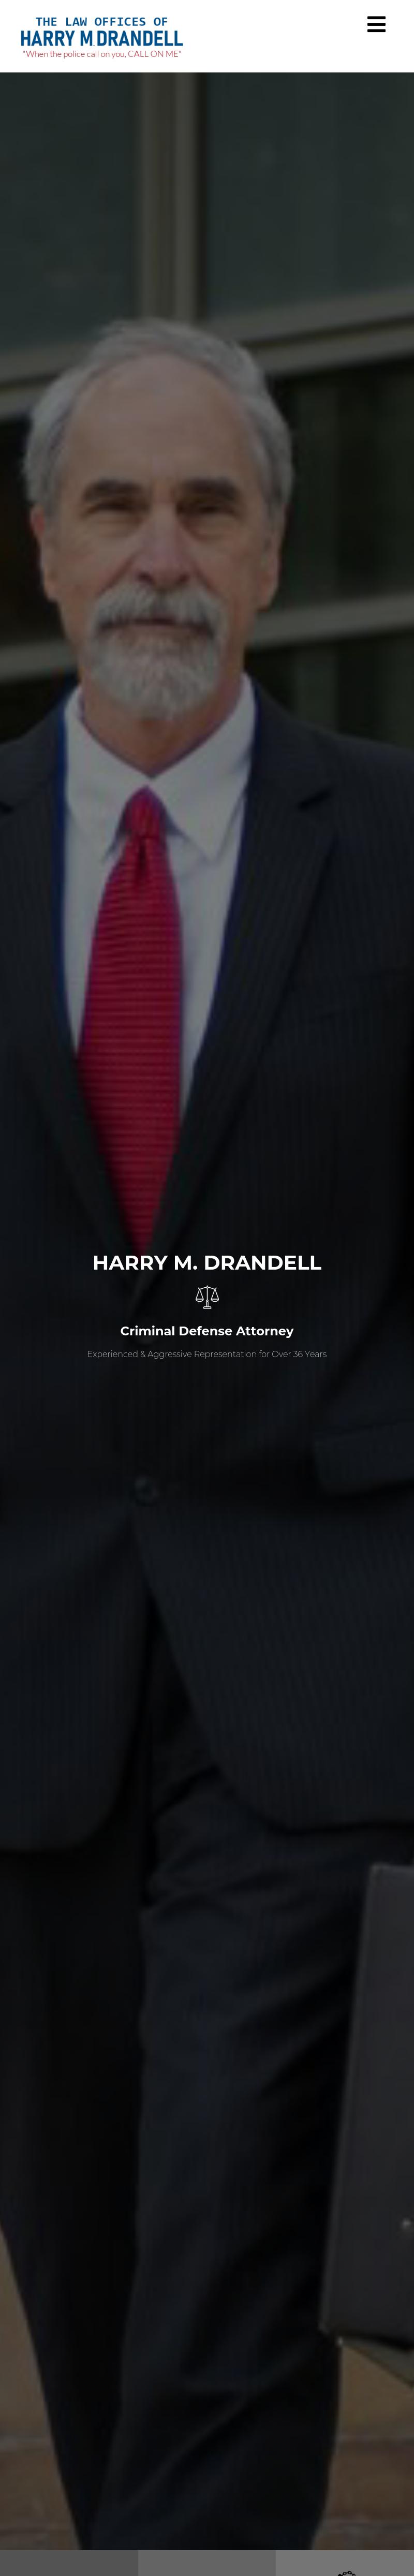 Drandell Harry M - Fresno CA Lawyers